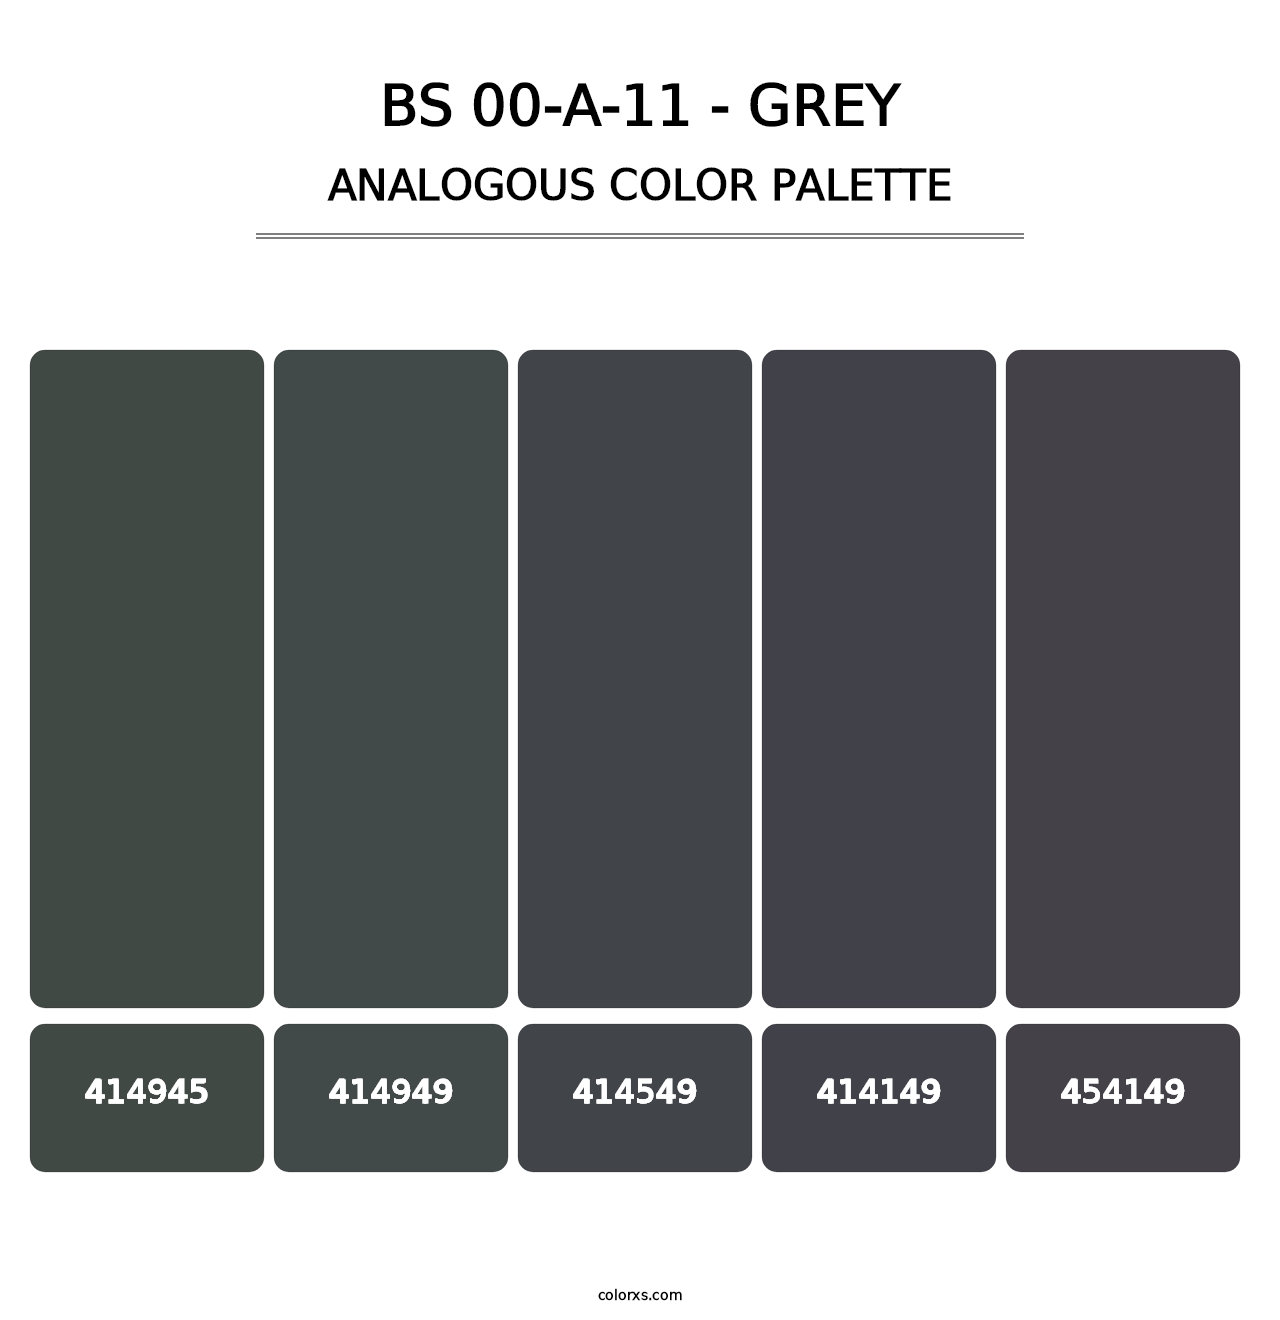 BS 00-A-11 - Grey - Analogous Color Palette